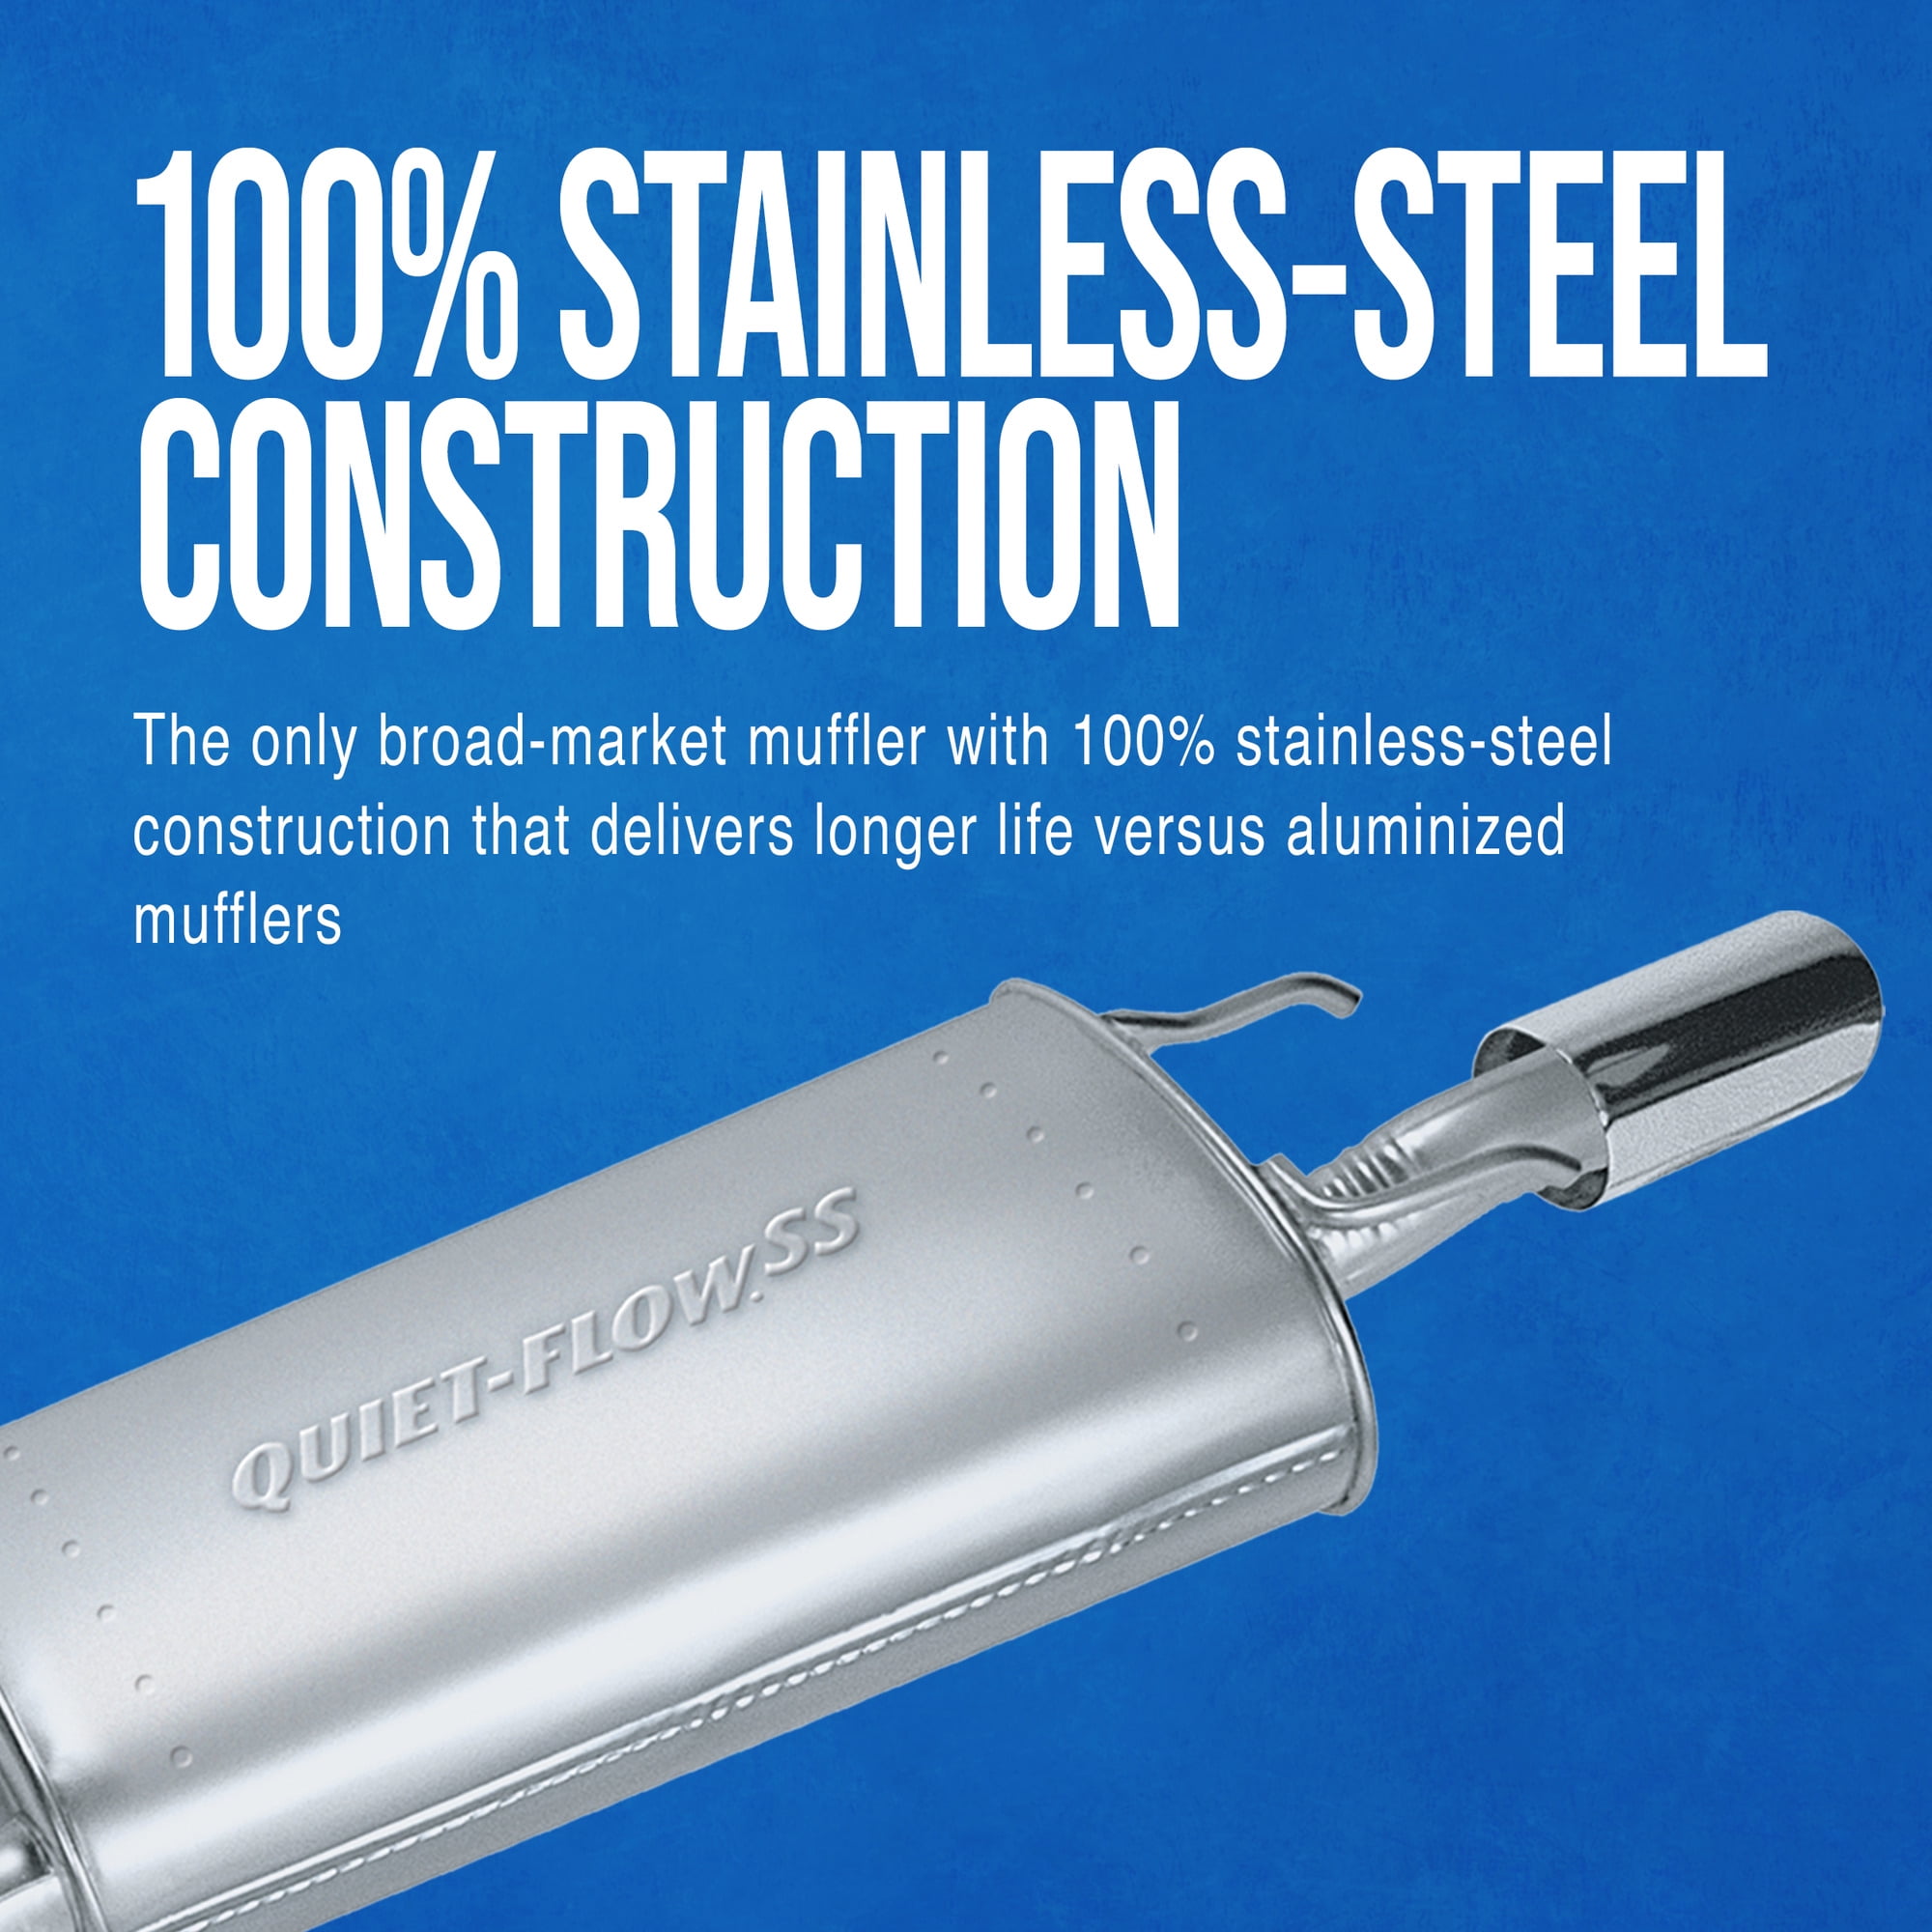 Walker 21533 Quiet-Flow Stainless Steel Muffler